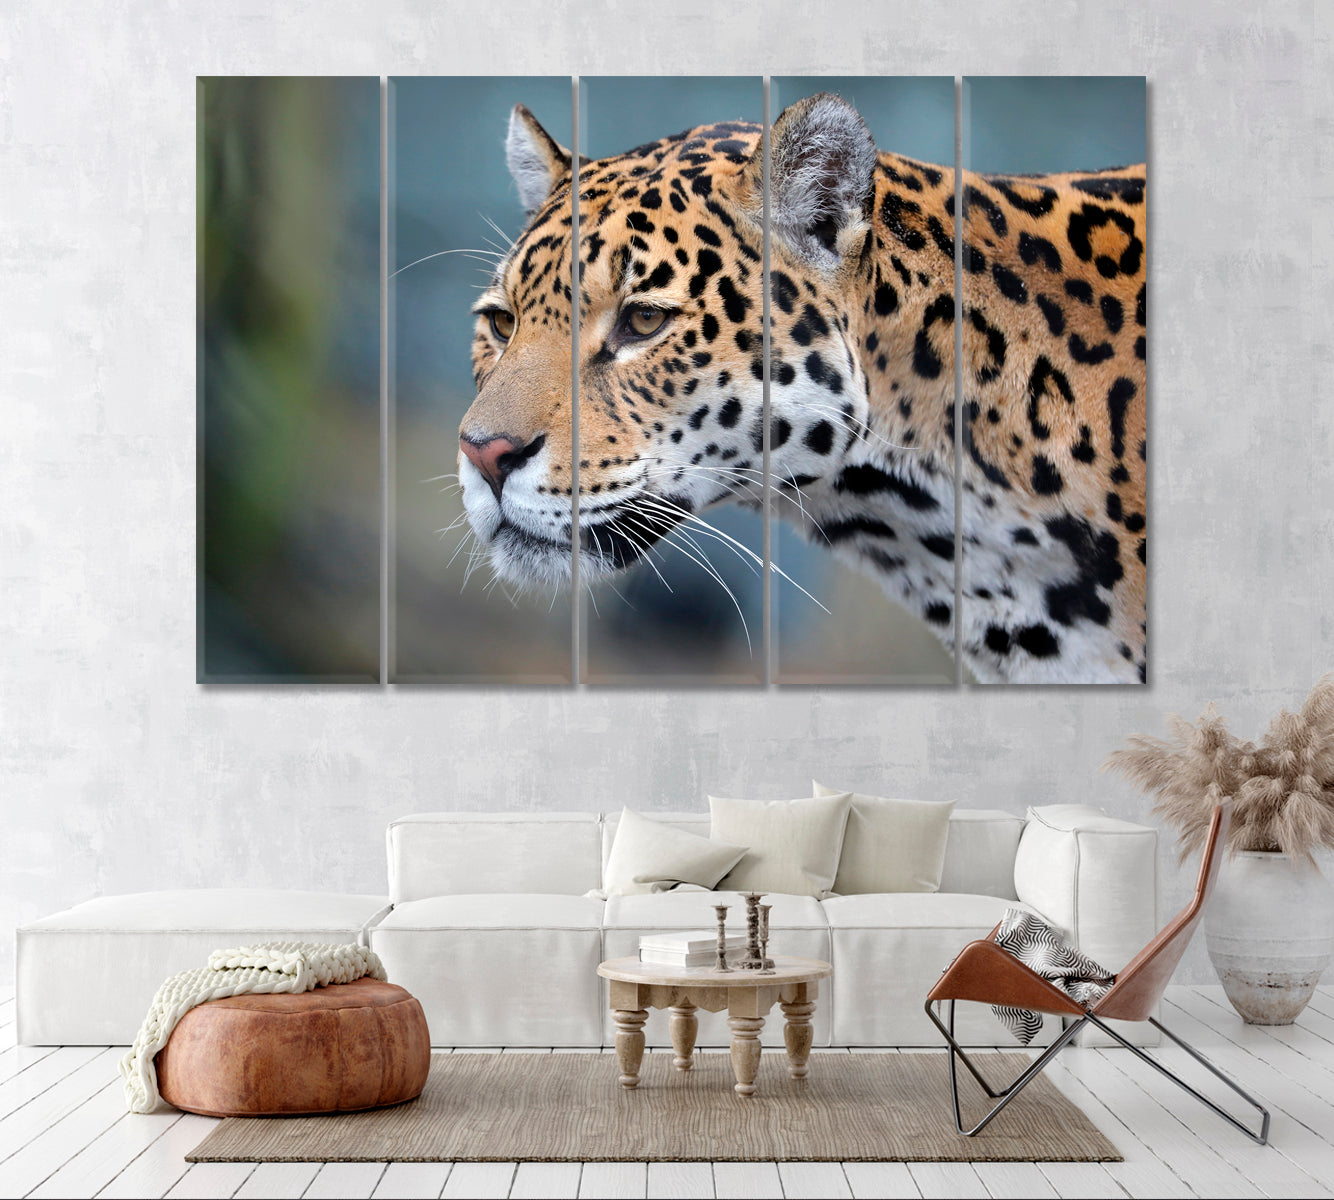 Jaguar Portrait Canvas Print ArtLexy 5 Panels 36"x24" inches 